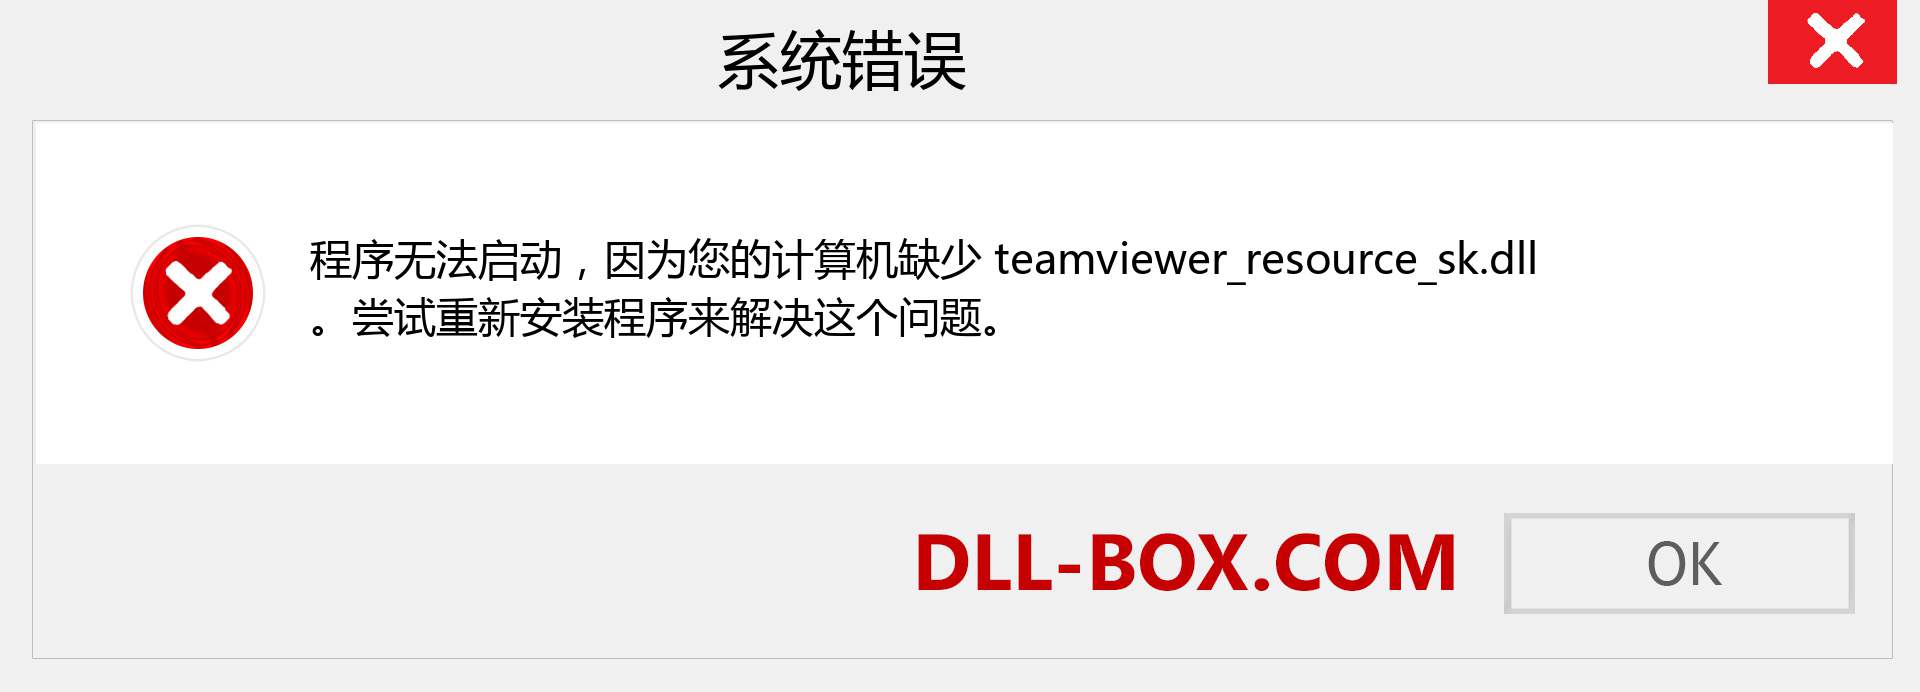 teamviewer_resource_sk.dll 文件丢失？。 适用于 Windows 7、8、10 的下载 - 修复 Windows、照片、图像上的 teamviewer_resource_sk dll 丢失错误